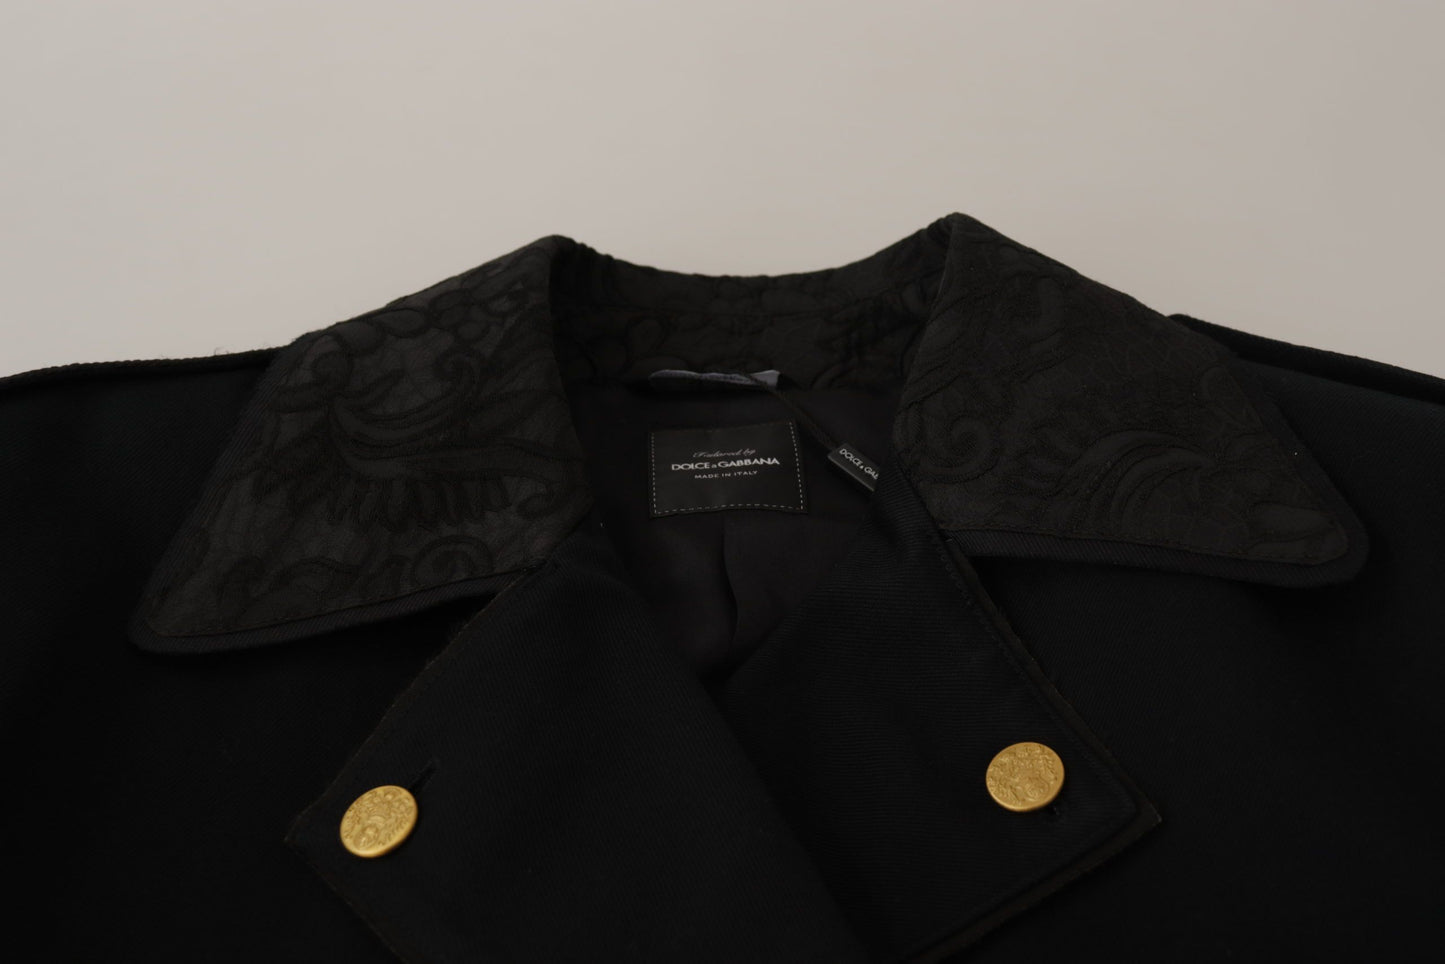 Elegant Black Double Breasted Jacket